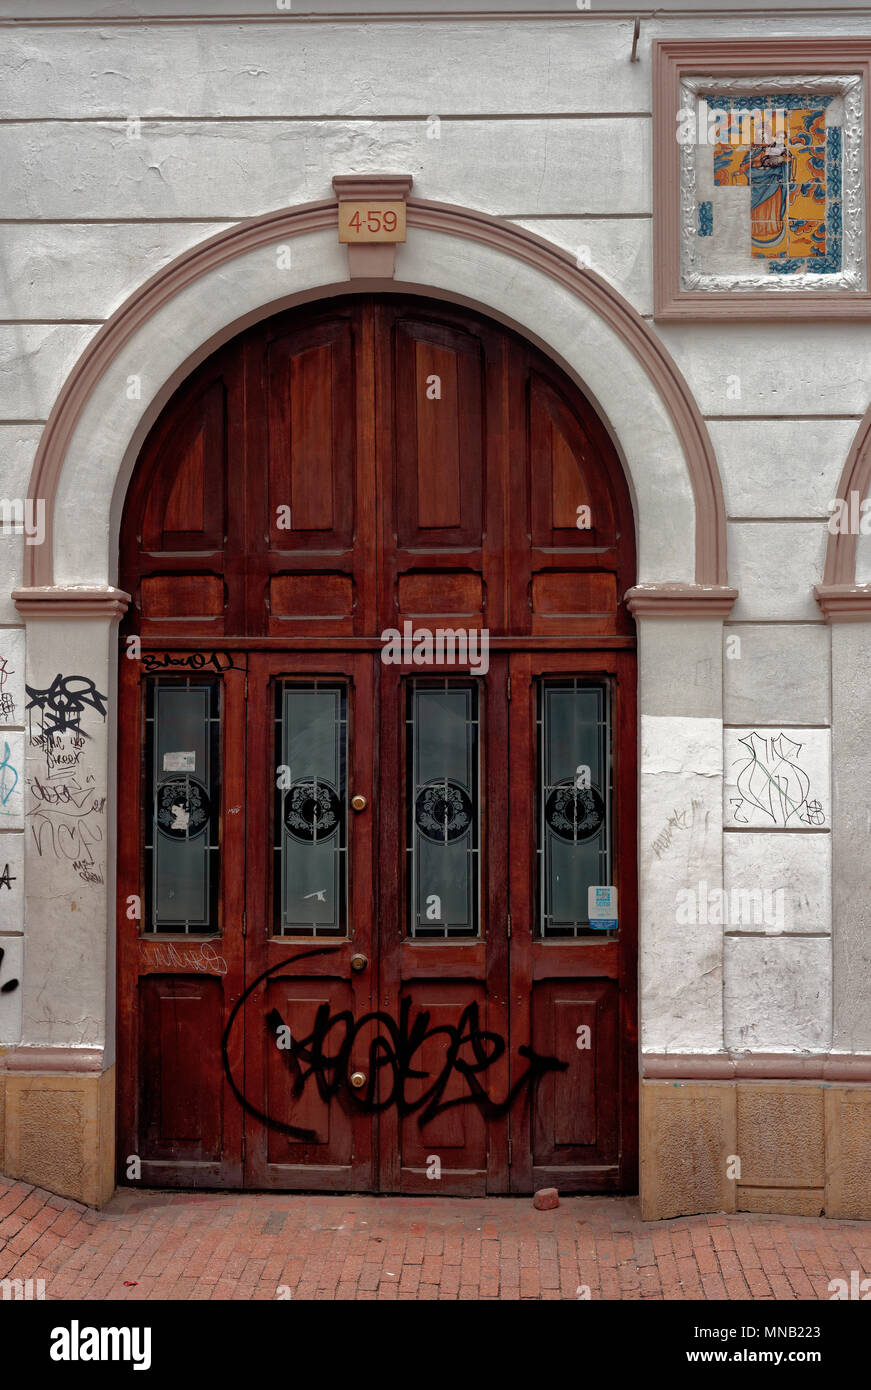 Porte en bois avec un arc et une mosaïque de la Vierge, rue de Bogota, Colombie Banque D'Images